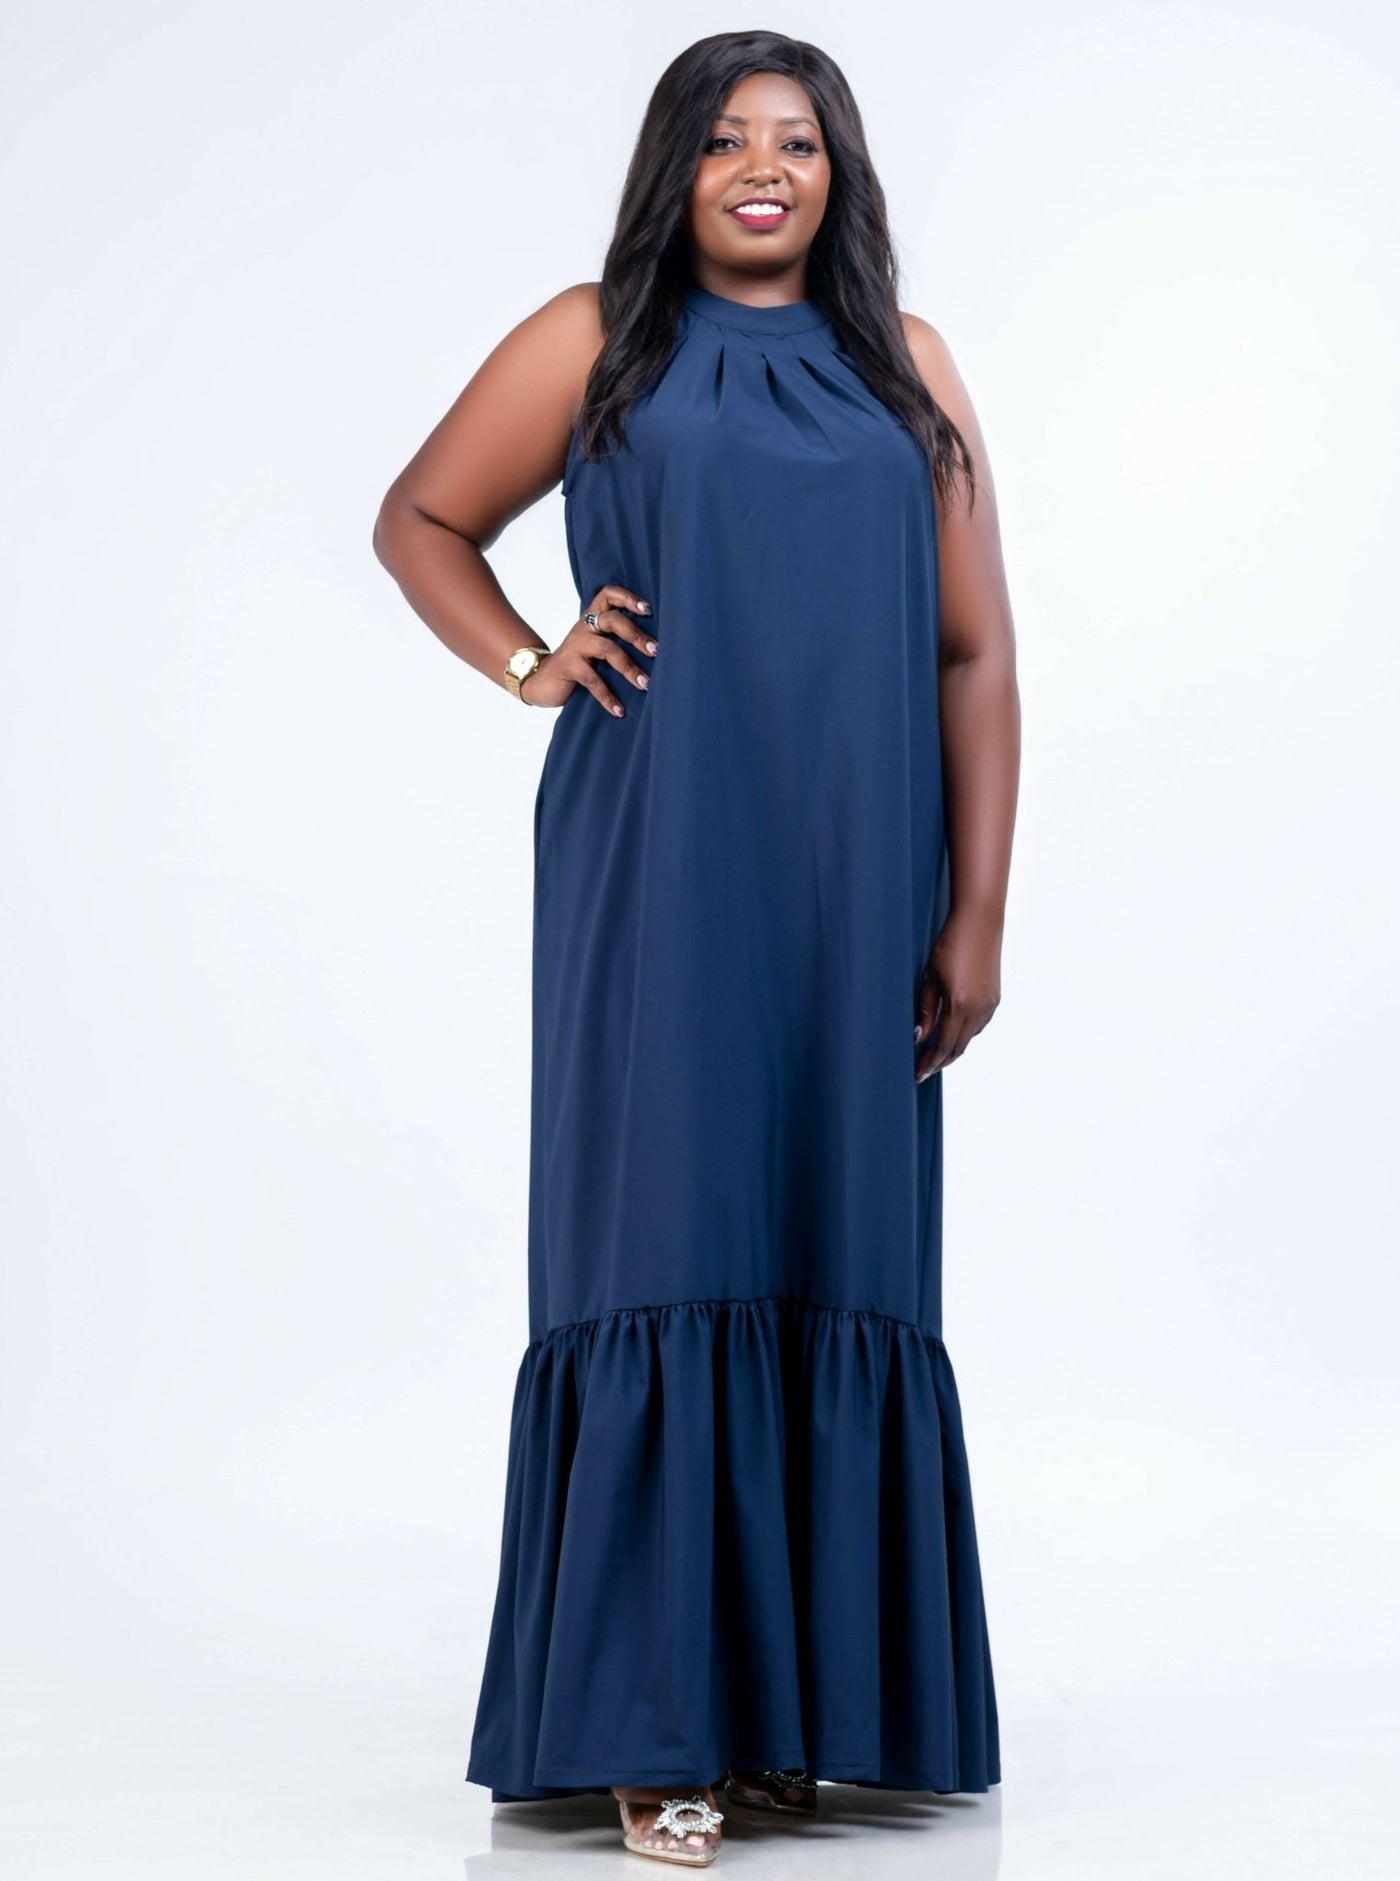 Magali Designs Halter Dress - Navy Blue - Shop Zetu Kenya